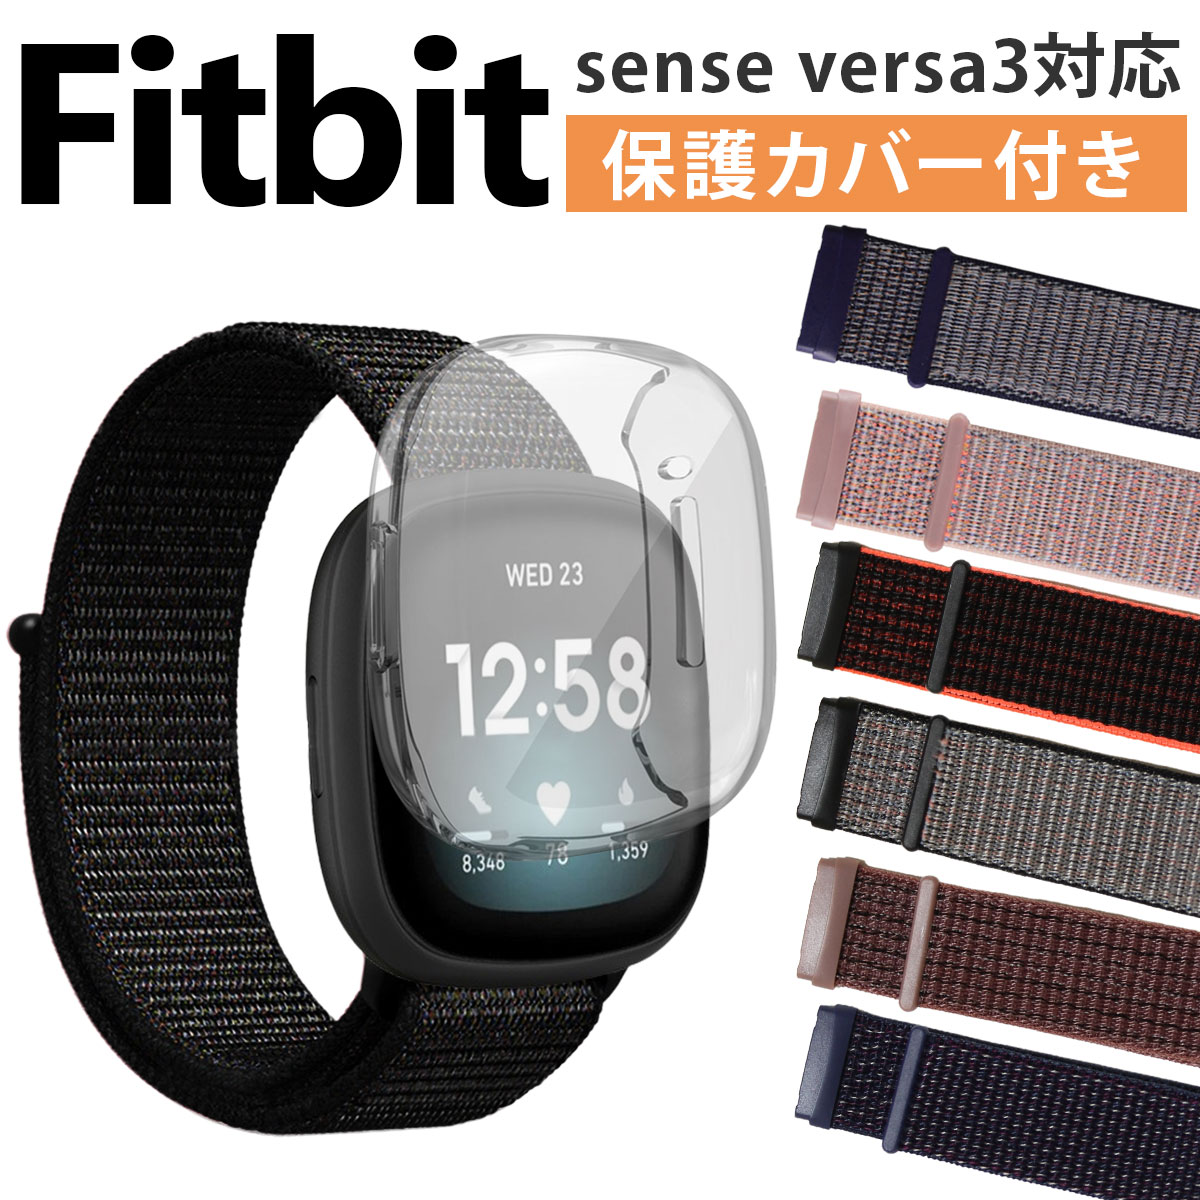 保護カバーセット】Fitbit sense versa 交換 ベルト ナイロン ベルクロ フィットビット ヴァーサ 対応 バンド センス  互換品 :d976:いいひ 店 通販 